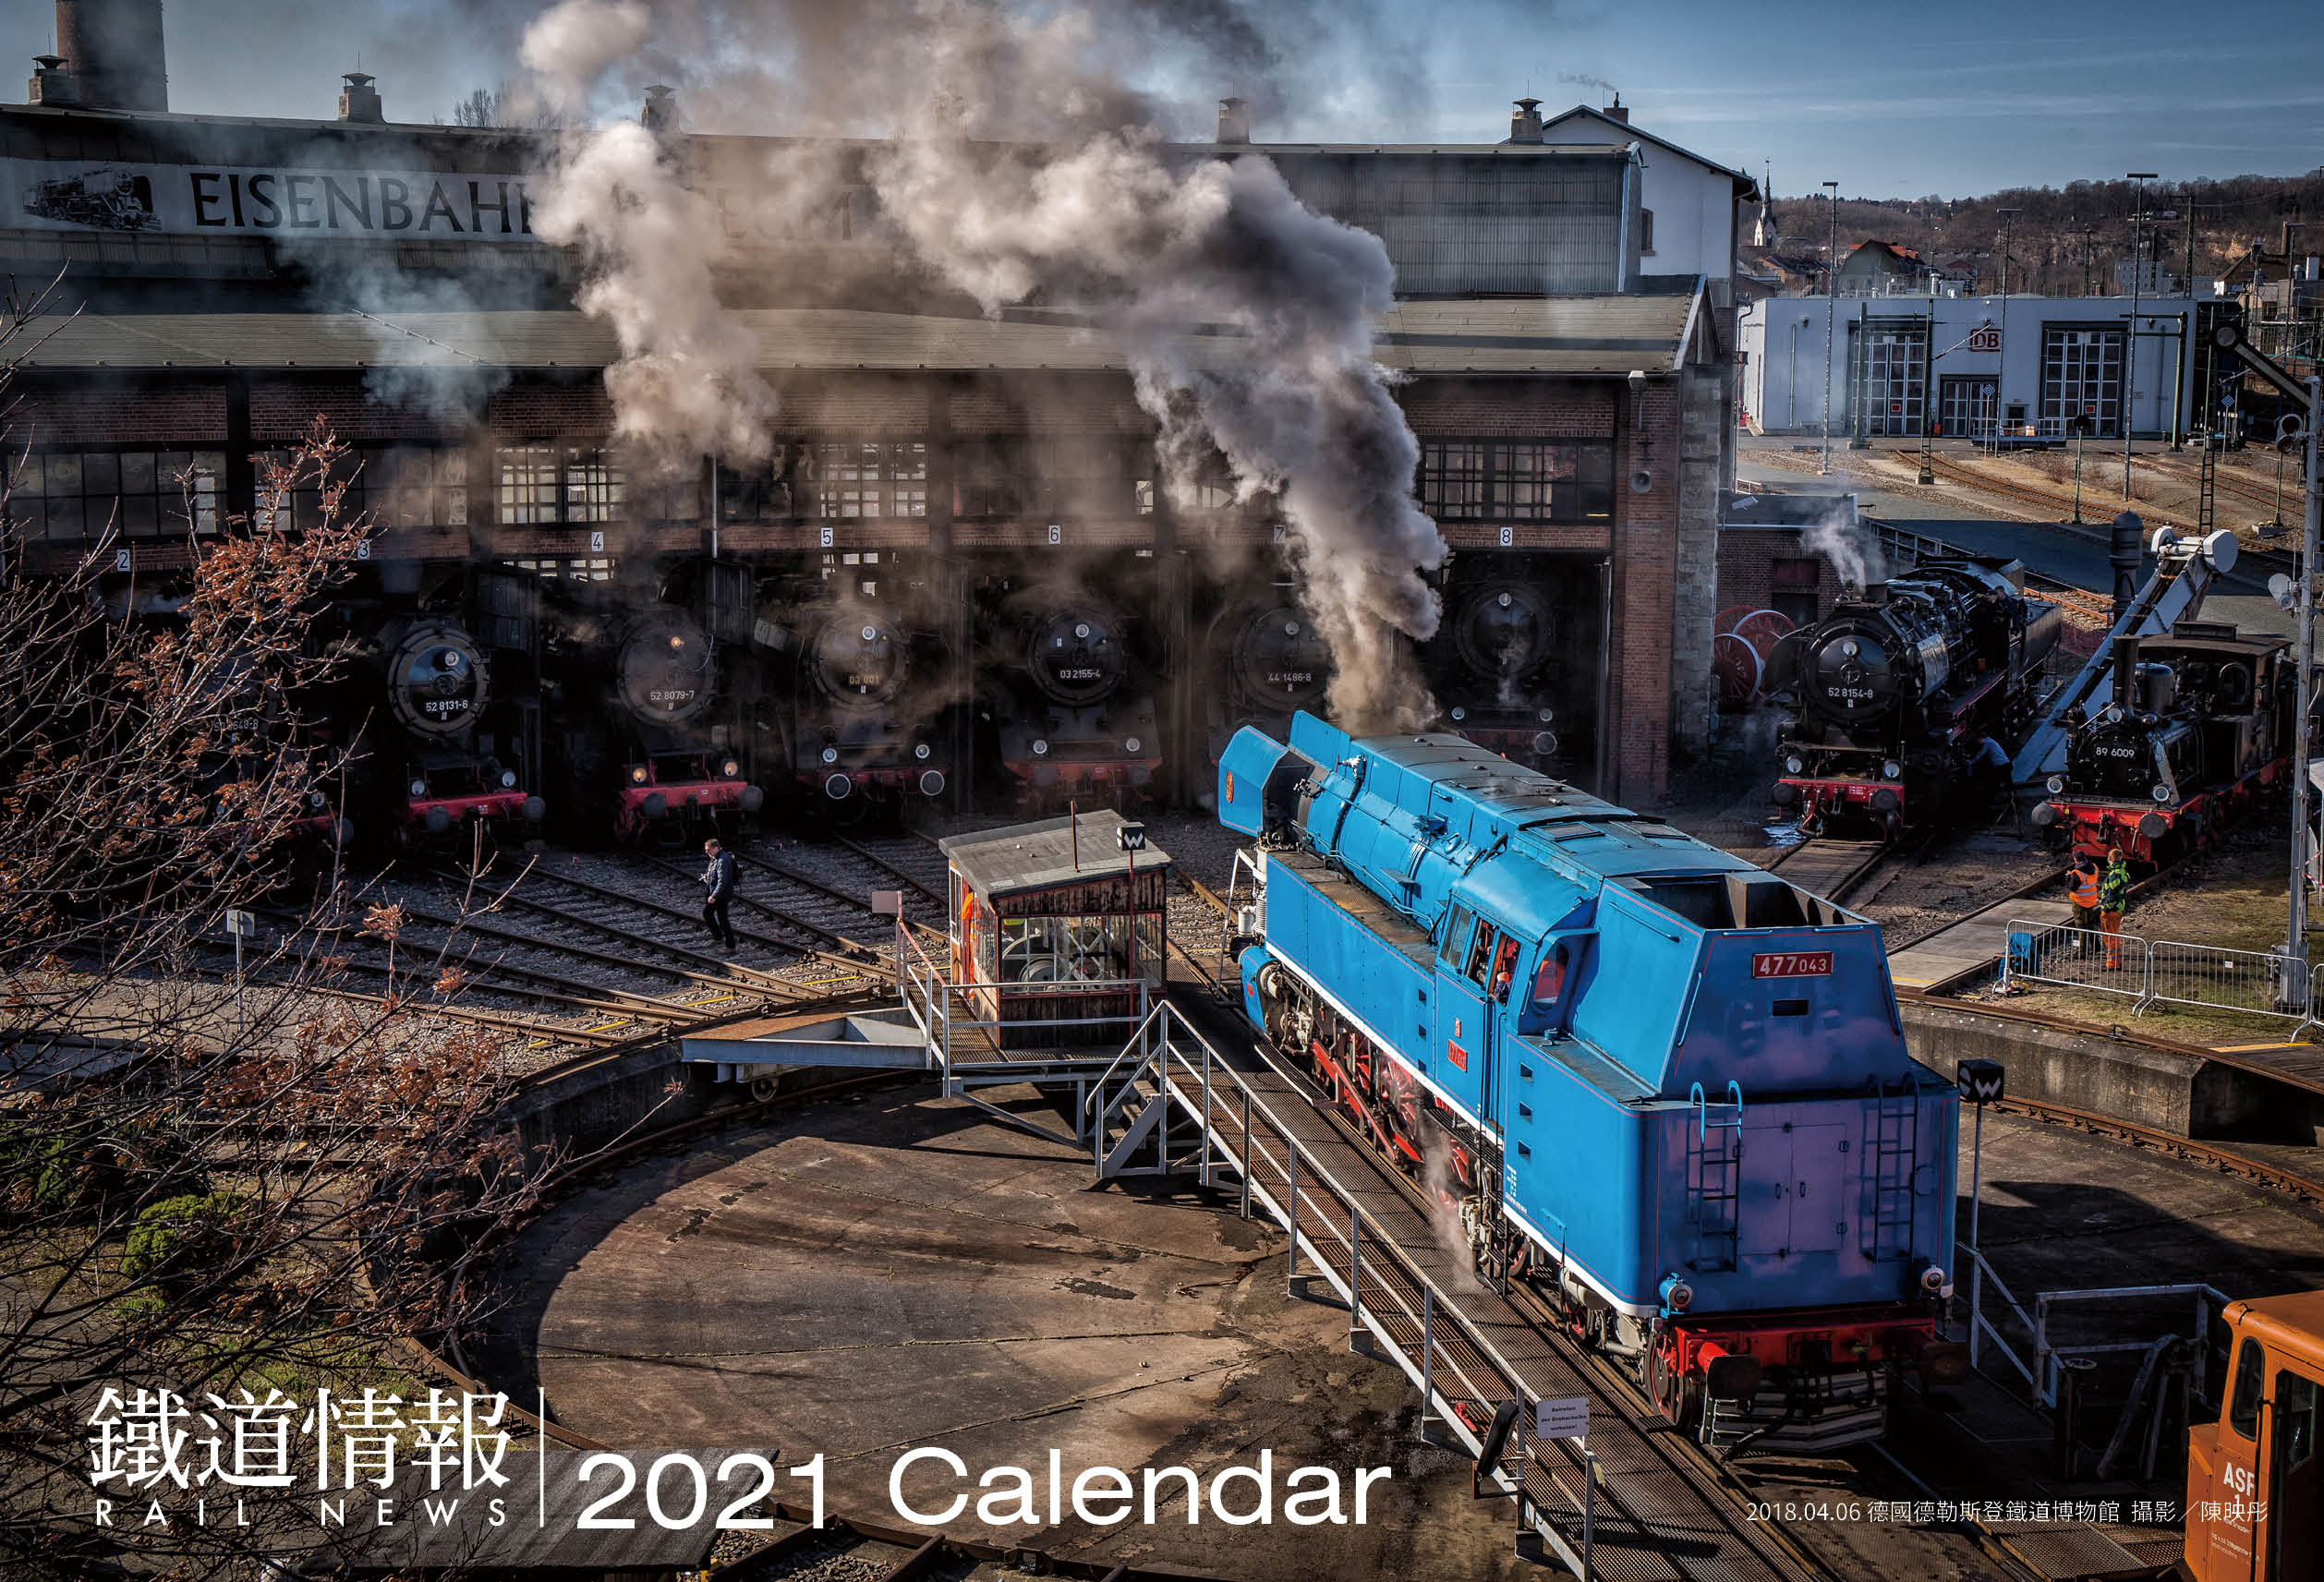 《鐵道情報》2021年桌曆